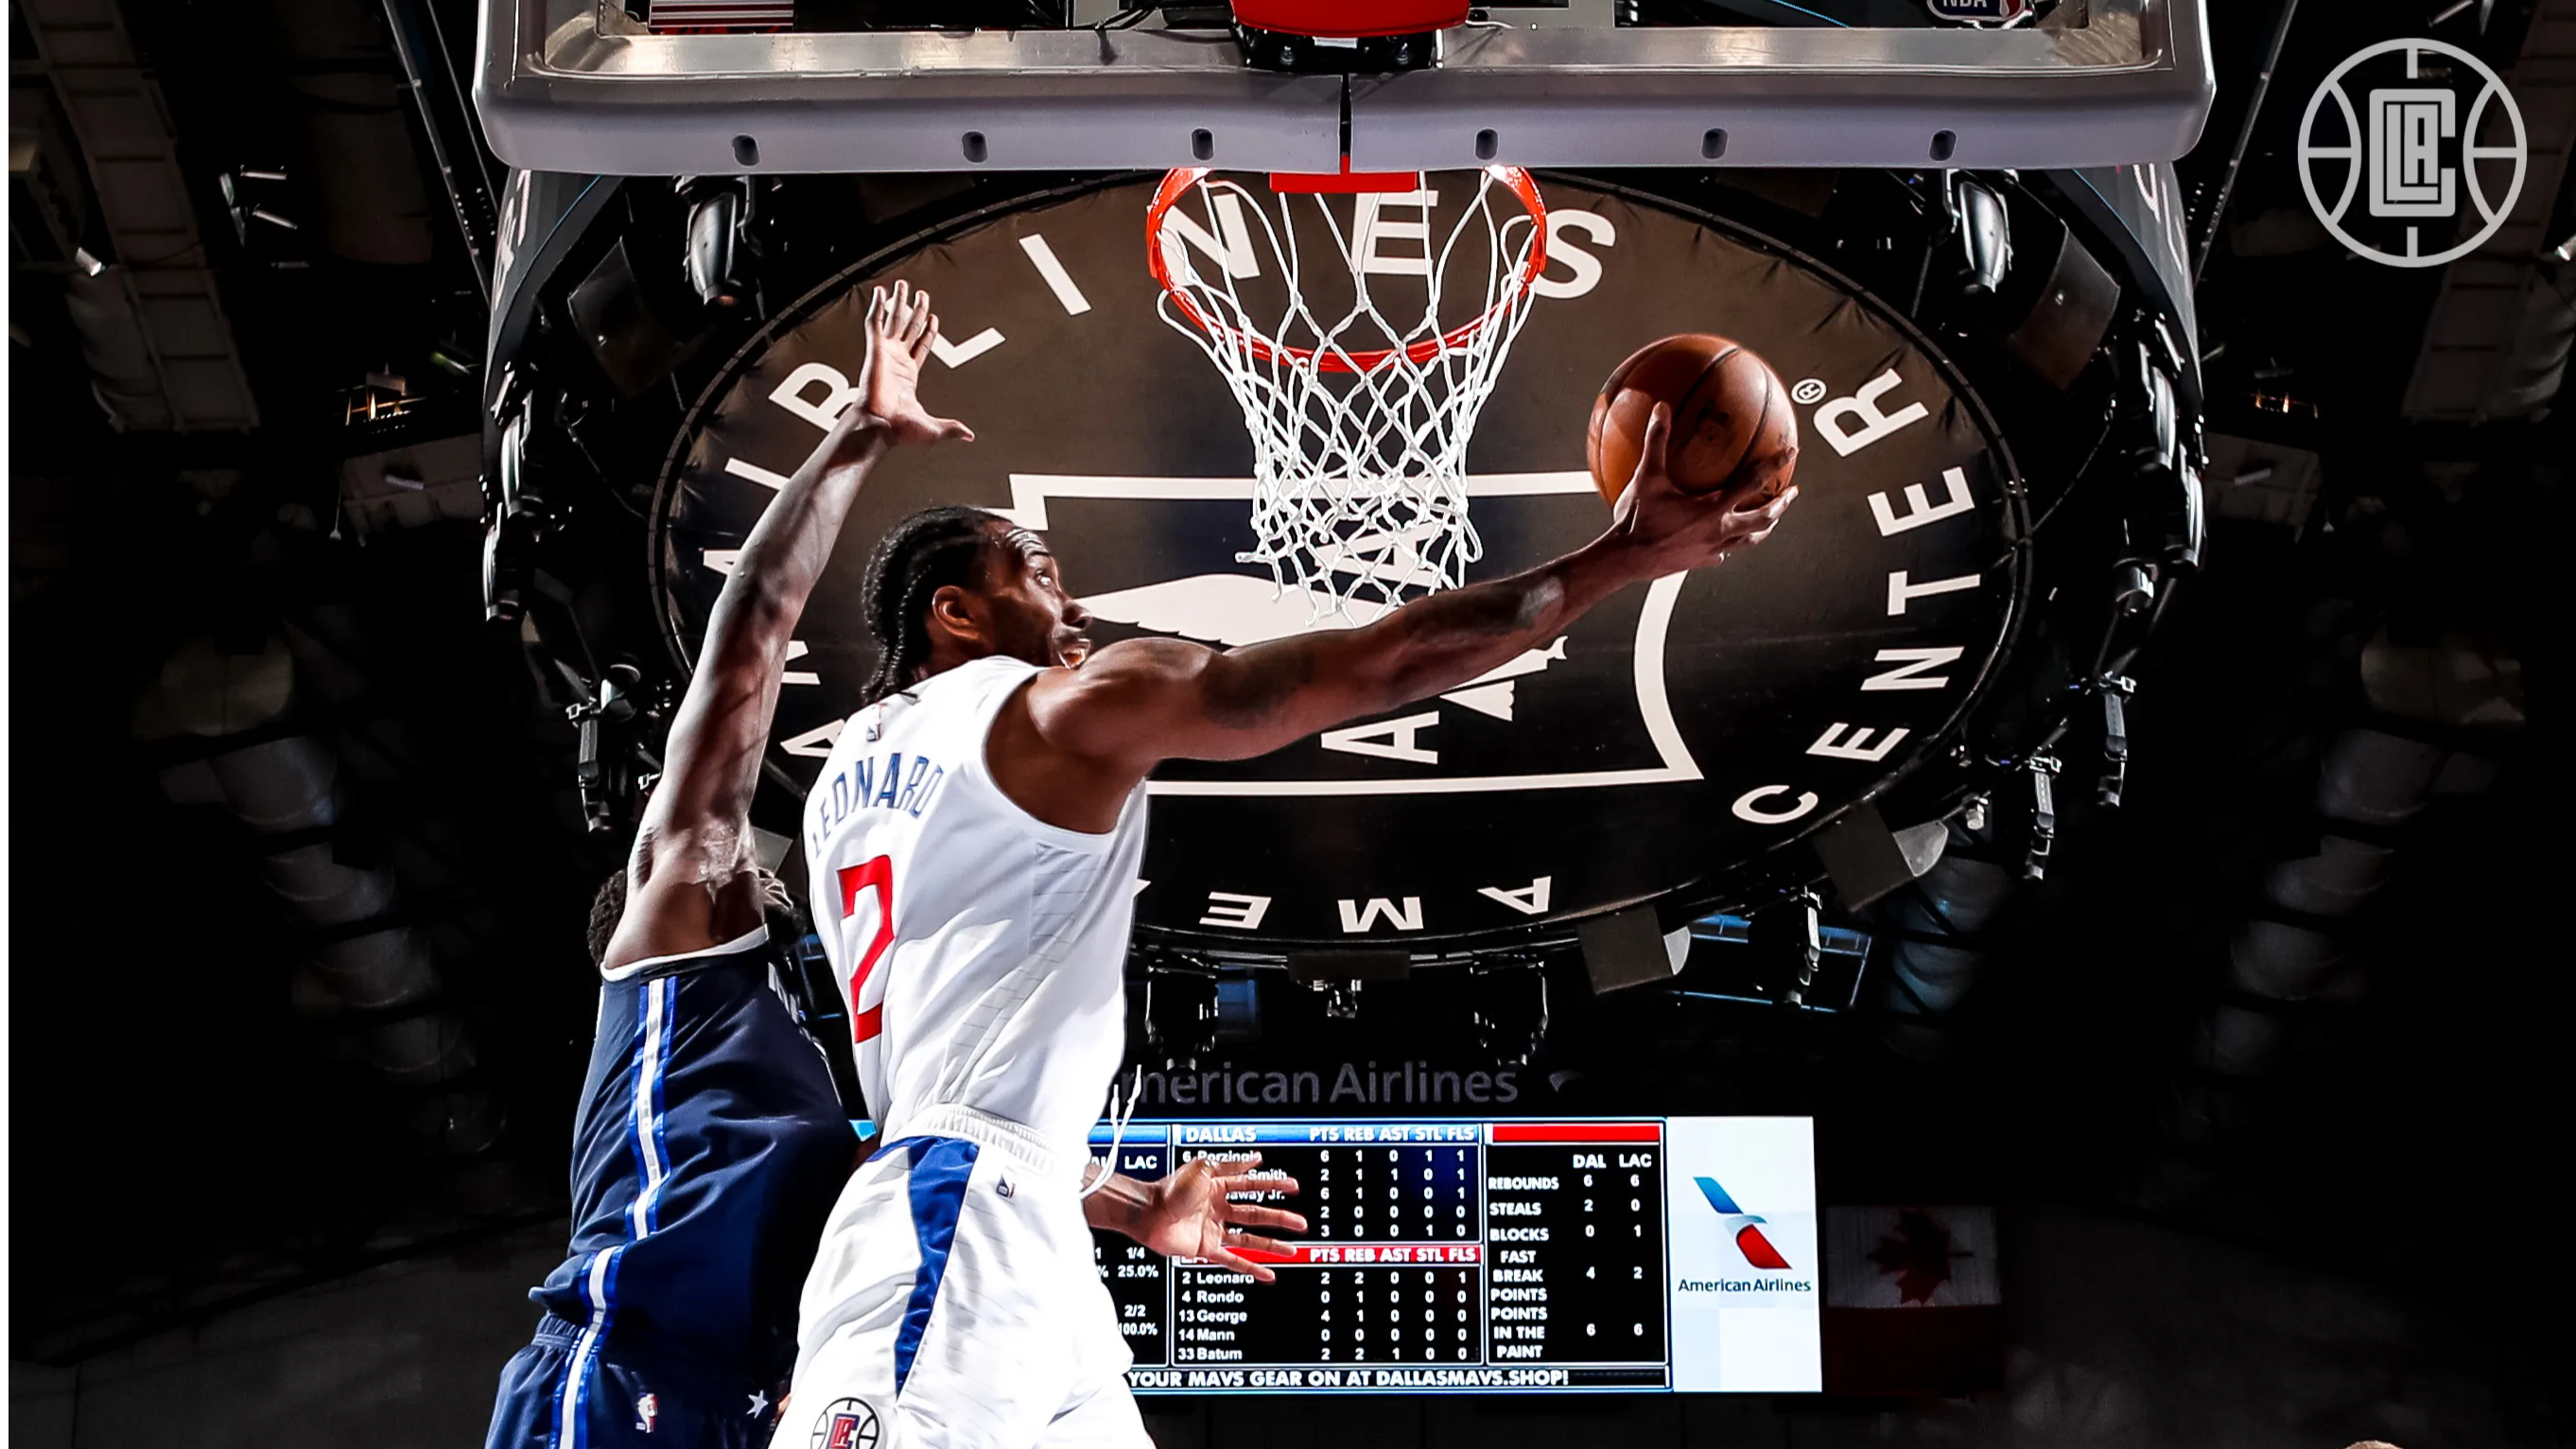 NBA: LA Clippers score 118-108 win over Dallas Mavericks in playoff game